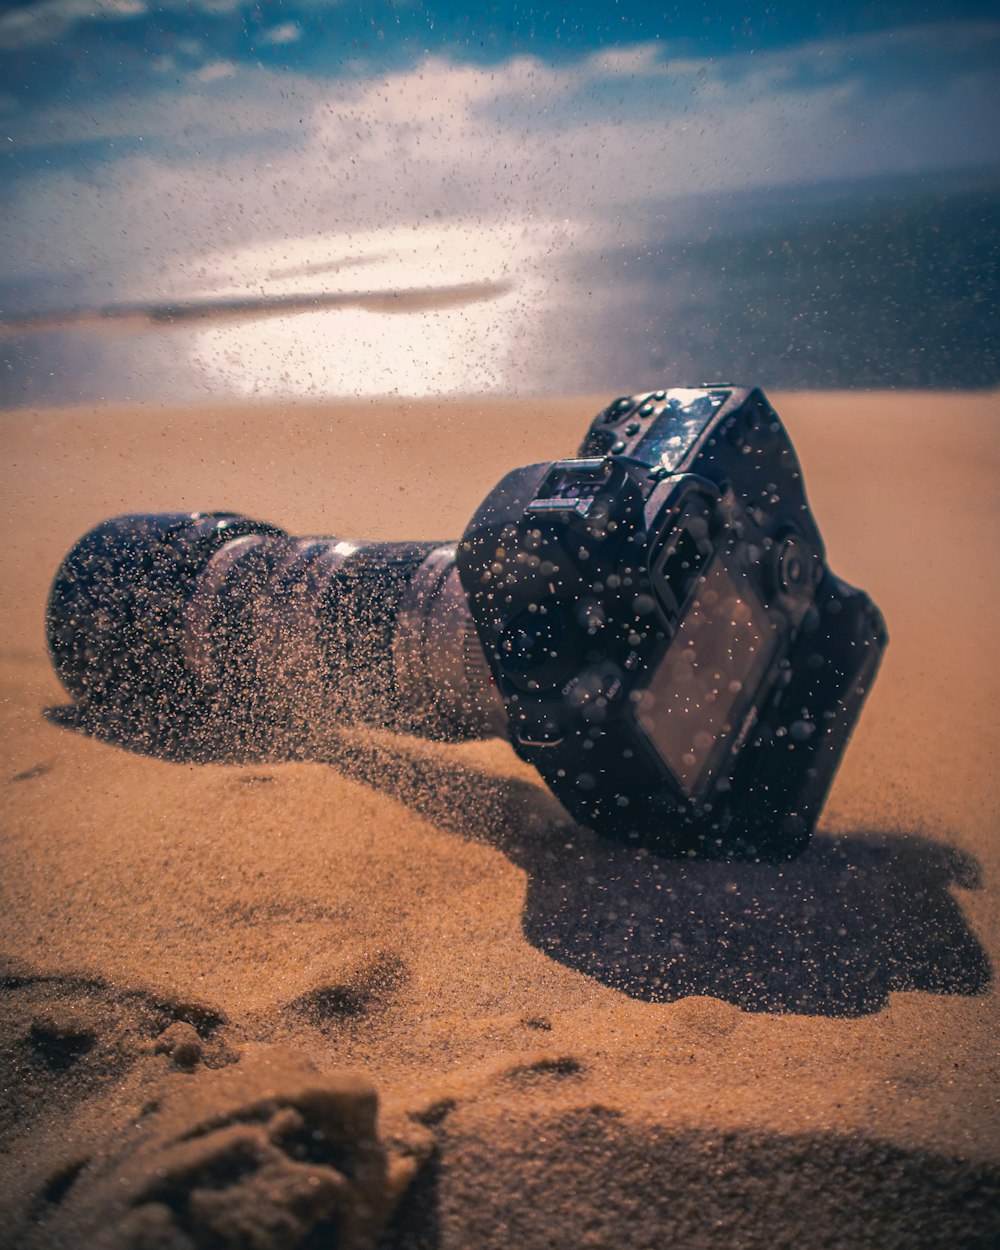 砂の上の黒いデジタル一眼レフカメラ